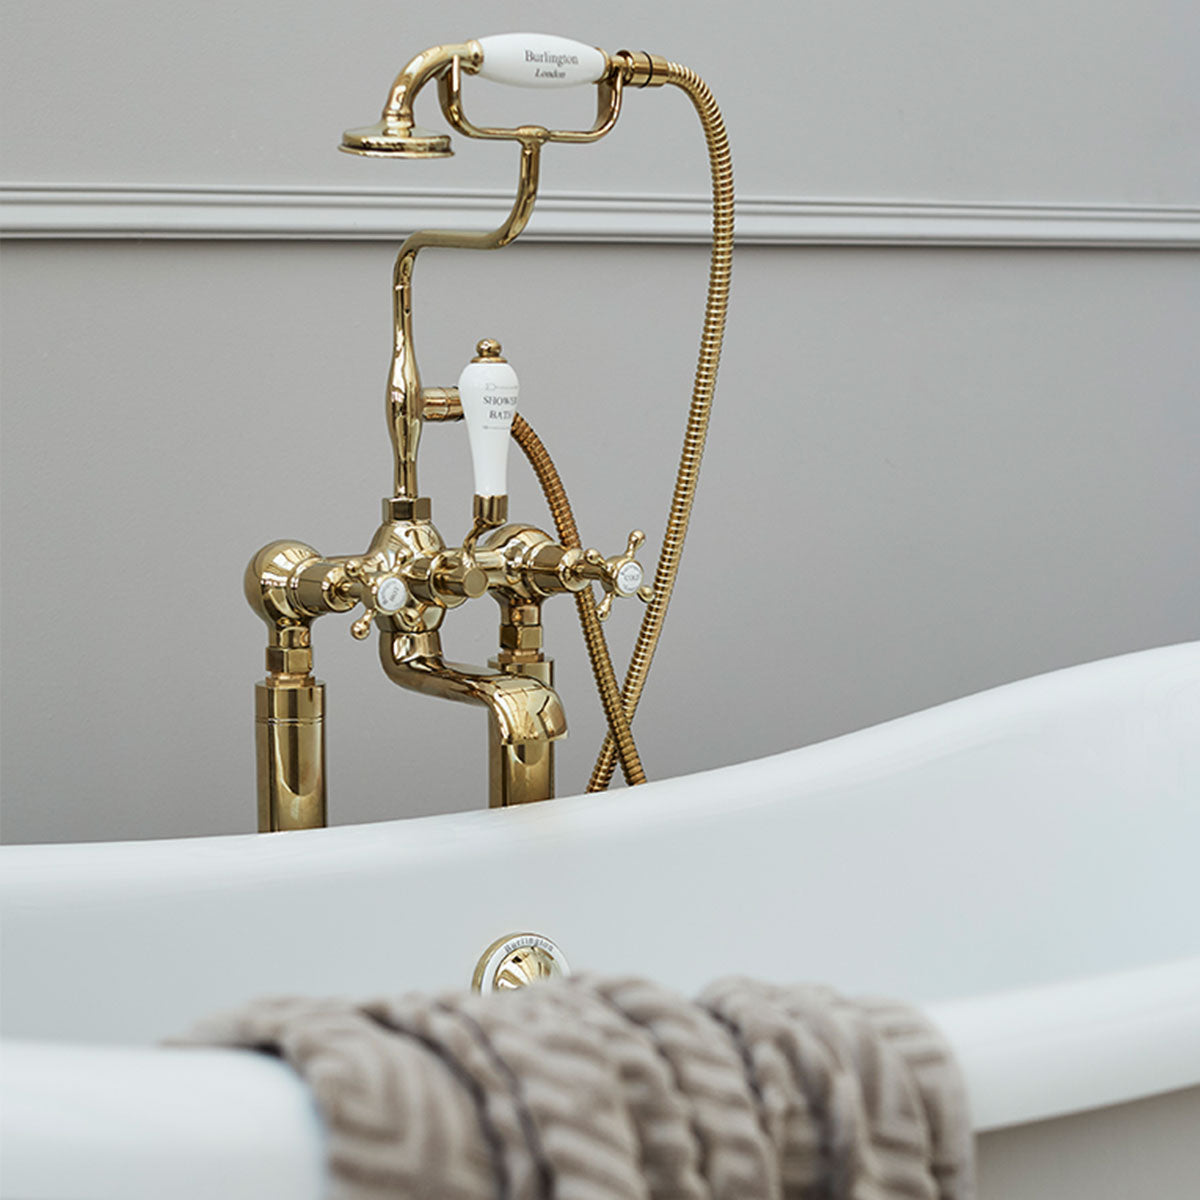 Burlington Claremont Deck Mounted Bath Shower Mixer With S Adjuster Deluxe Bathrooms UK